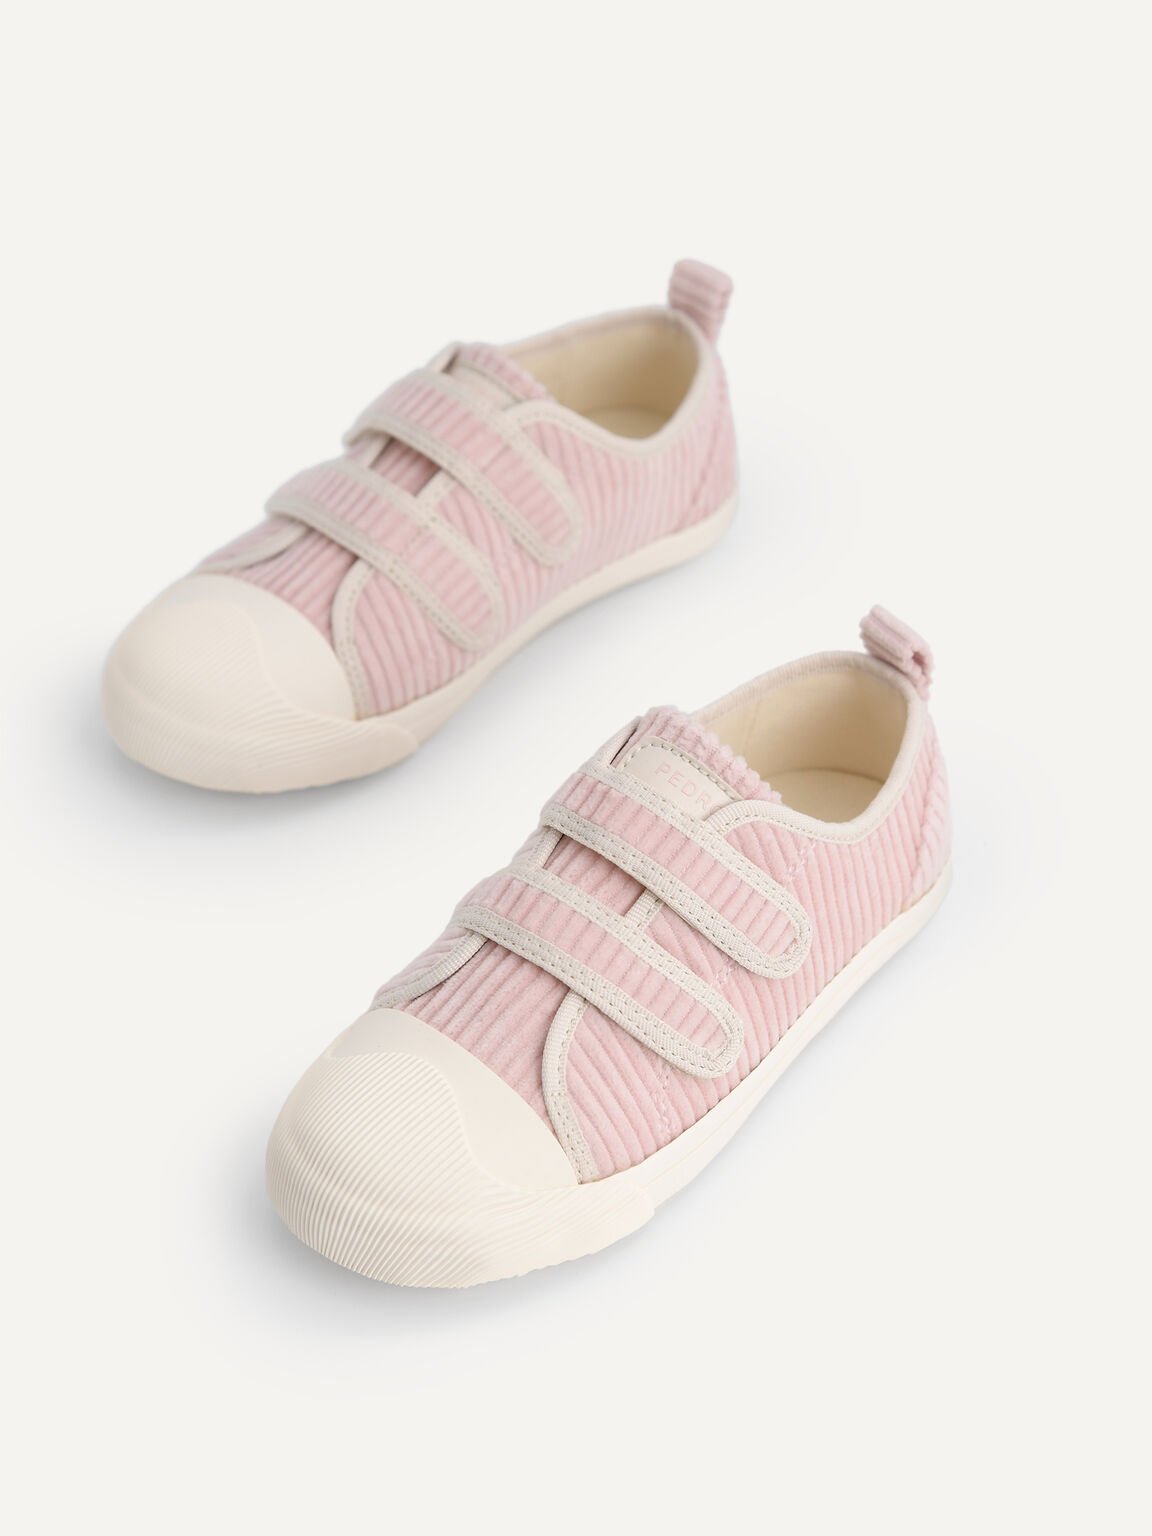 Corduroy Sneakers, Blush